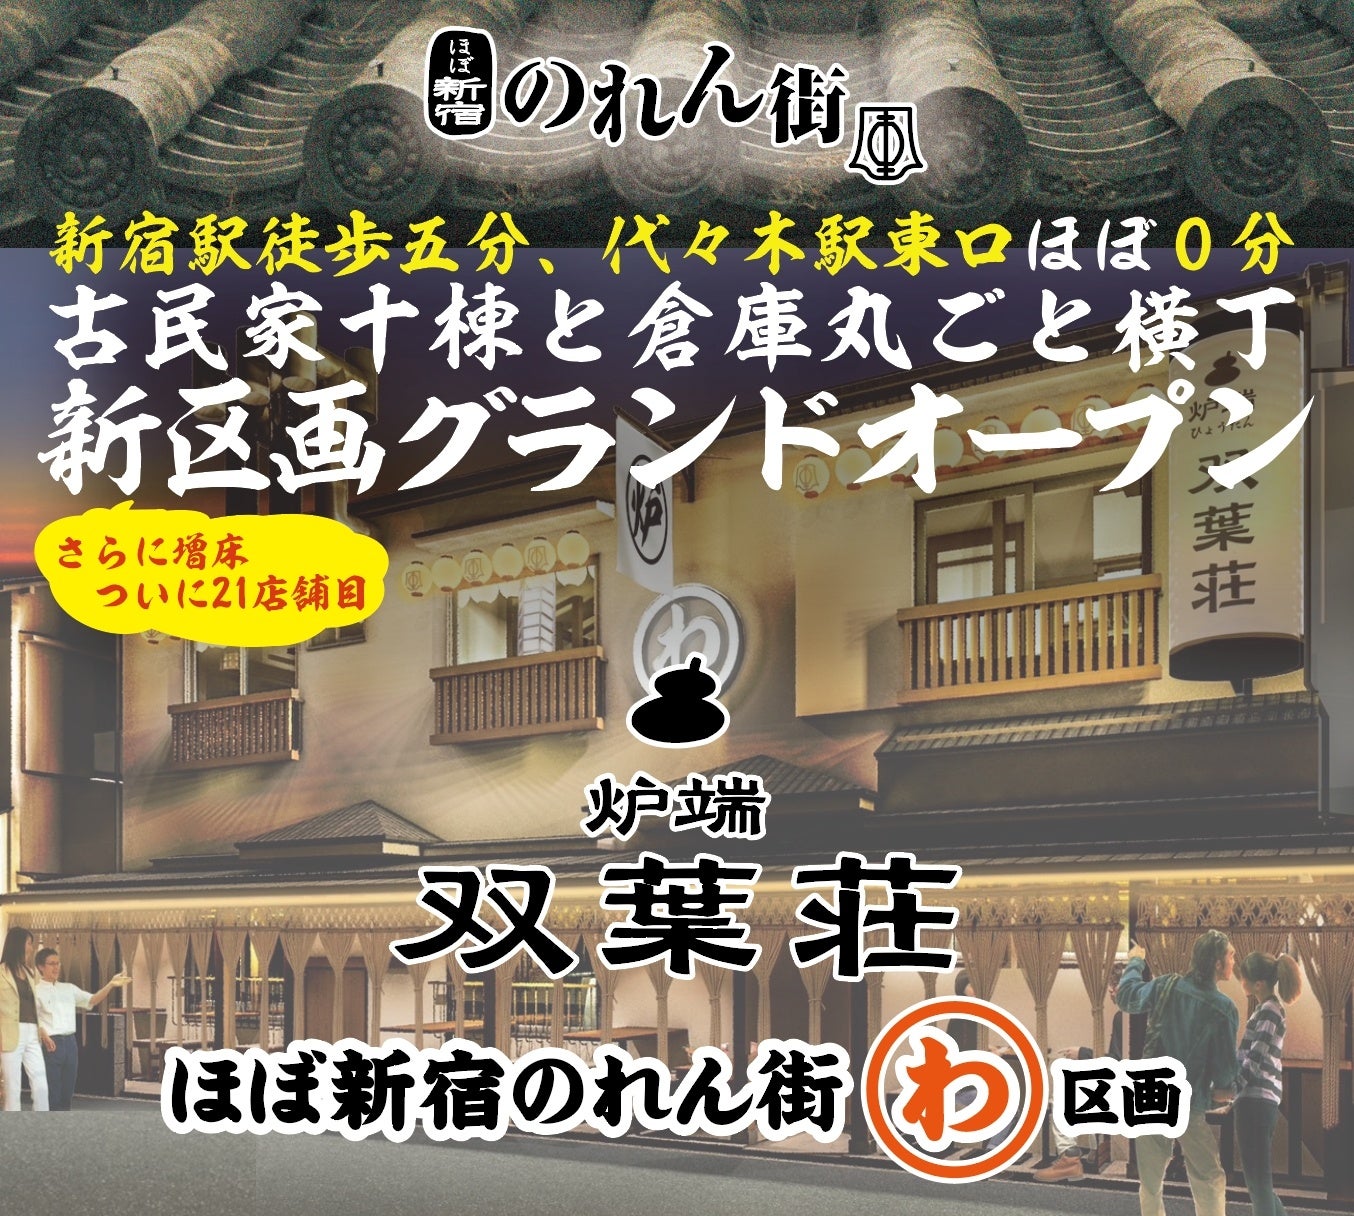 『洋風居酒屋Pecori』全店にて「Pecoriフェアメニュー2024夏」実施中！